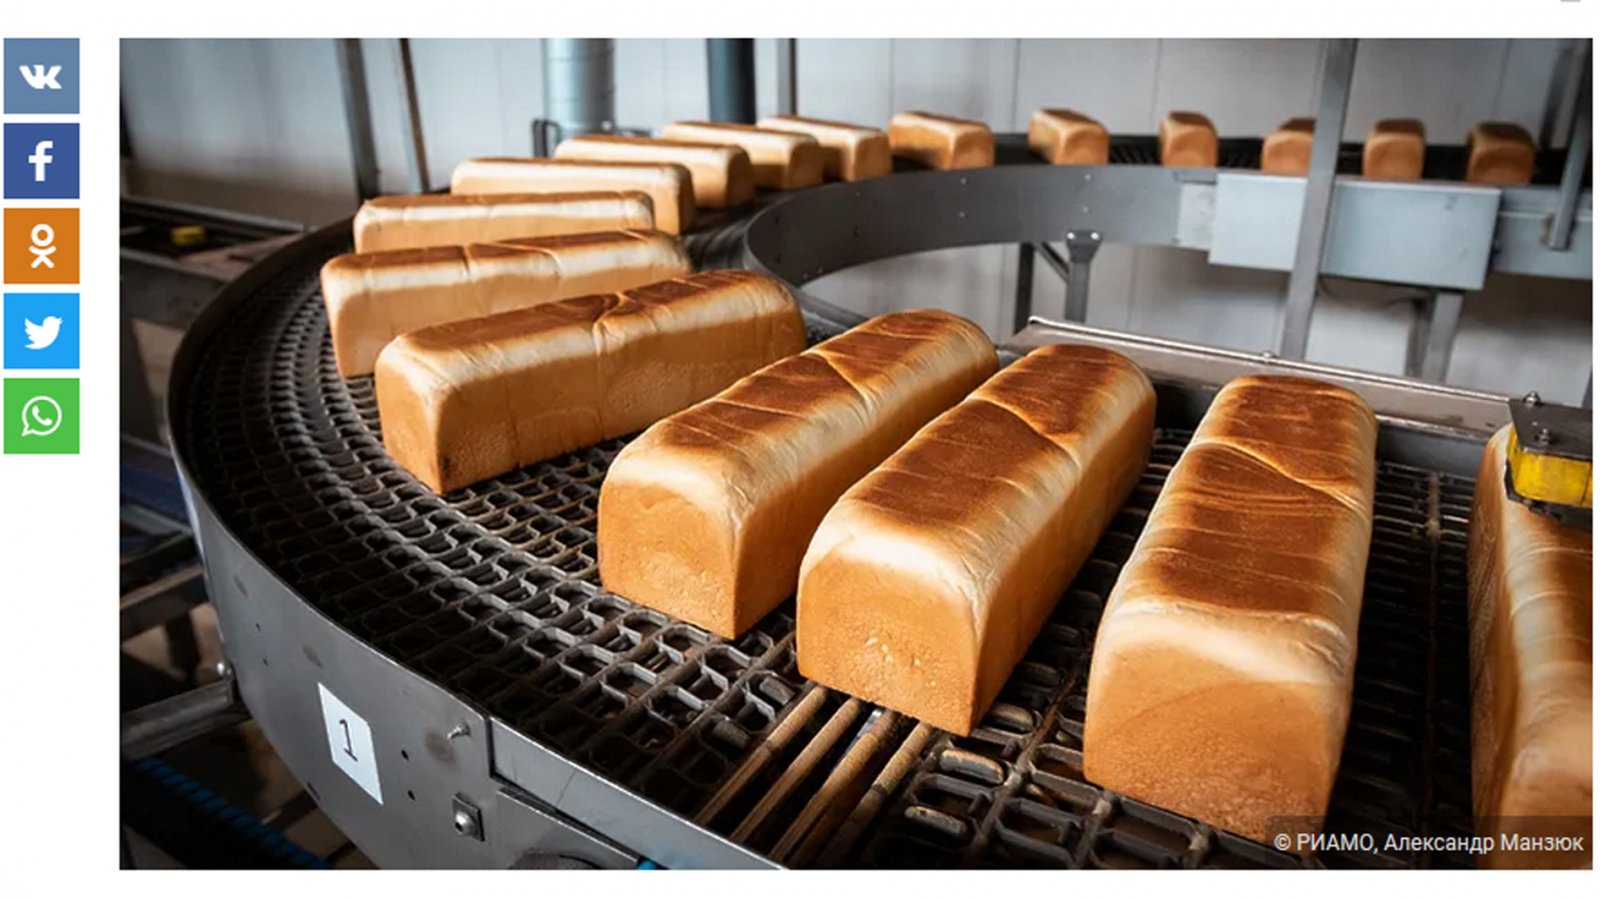 Хлеб цех. Хлеб на конвейере. Цех хлебобулочных изделий. Хлебопекарная промышленность. Хлебопекарное производство.